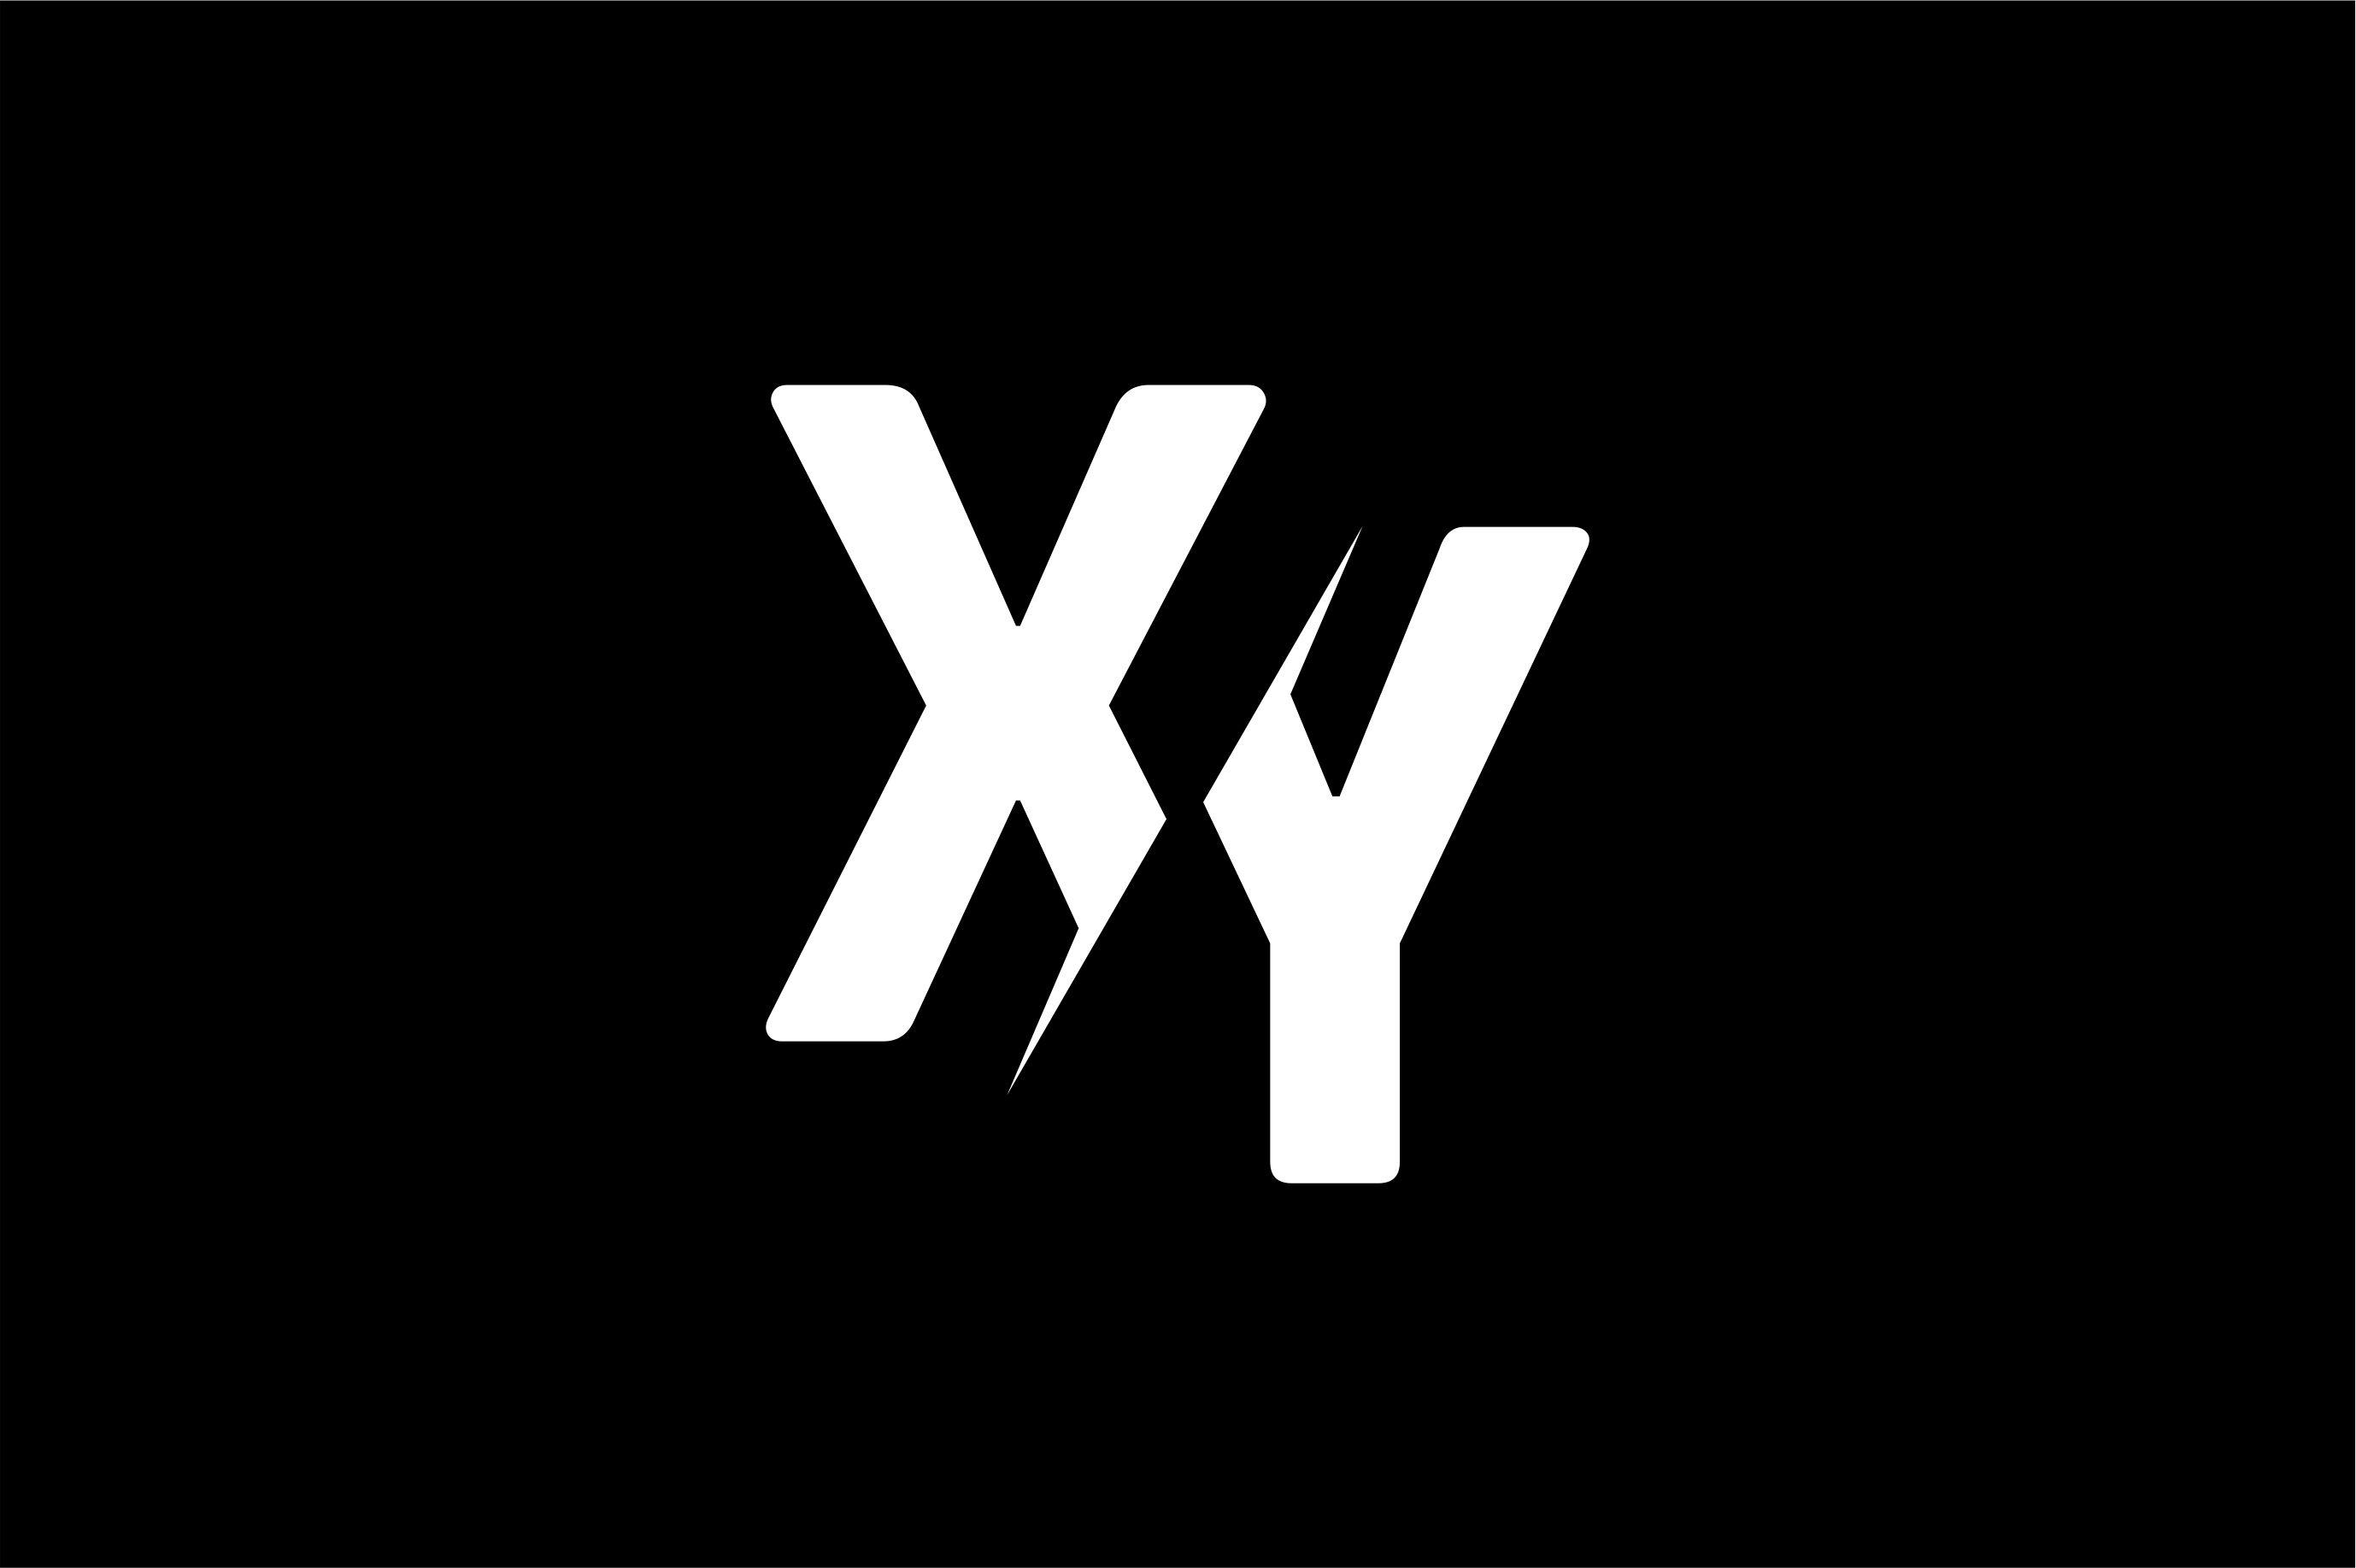 Логотип y. Логотип XY. Логотип с буквой y. Логотип на IY.